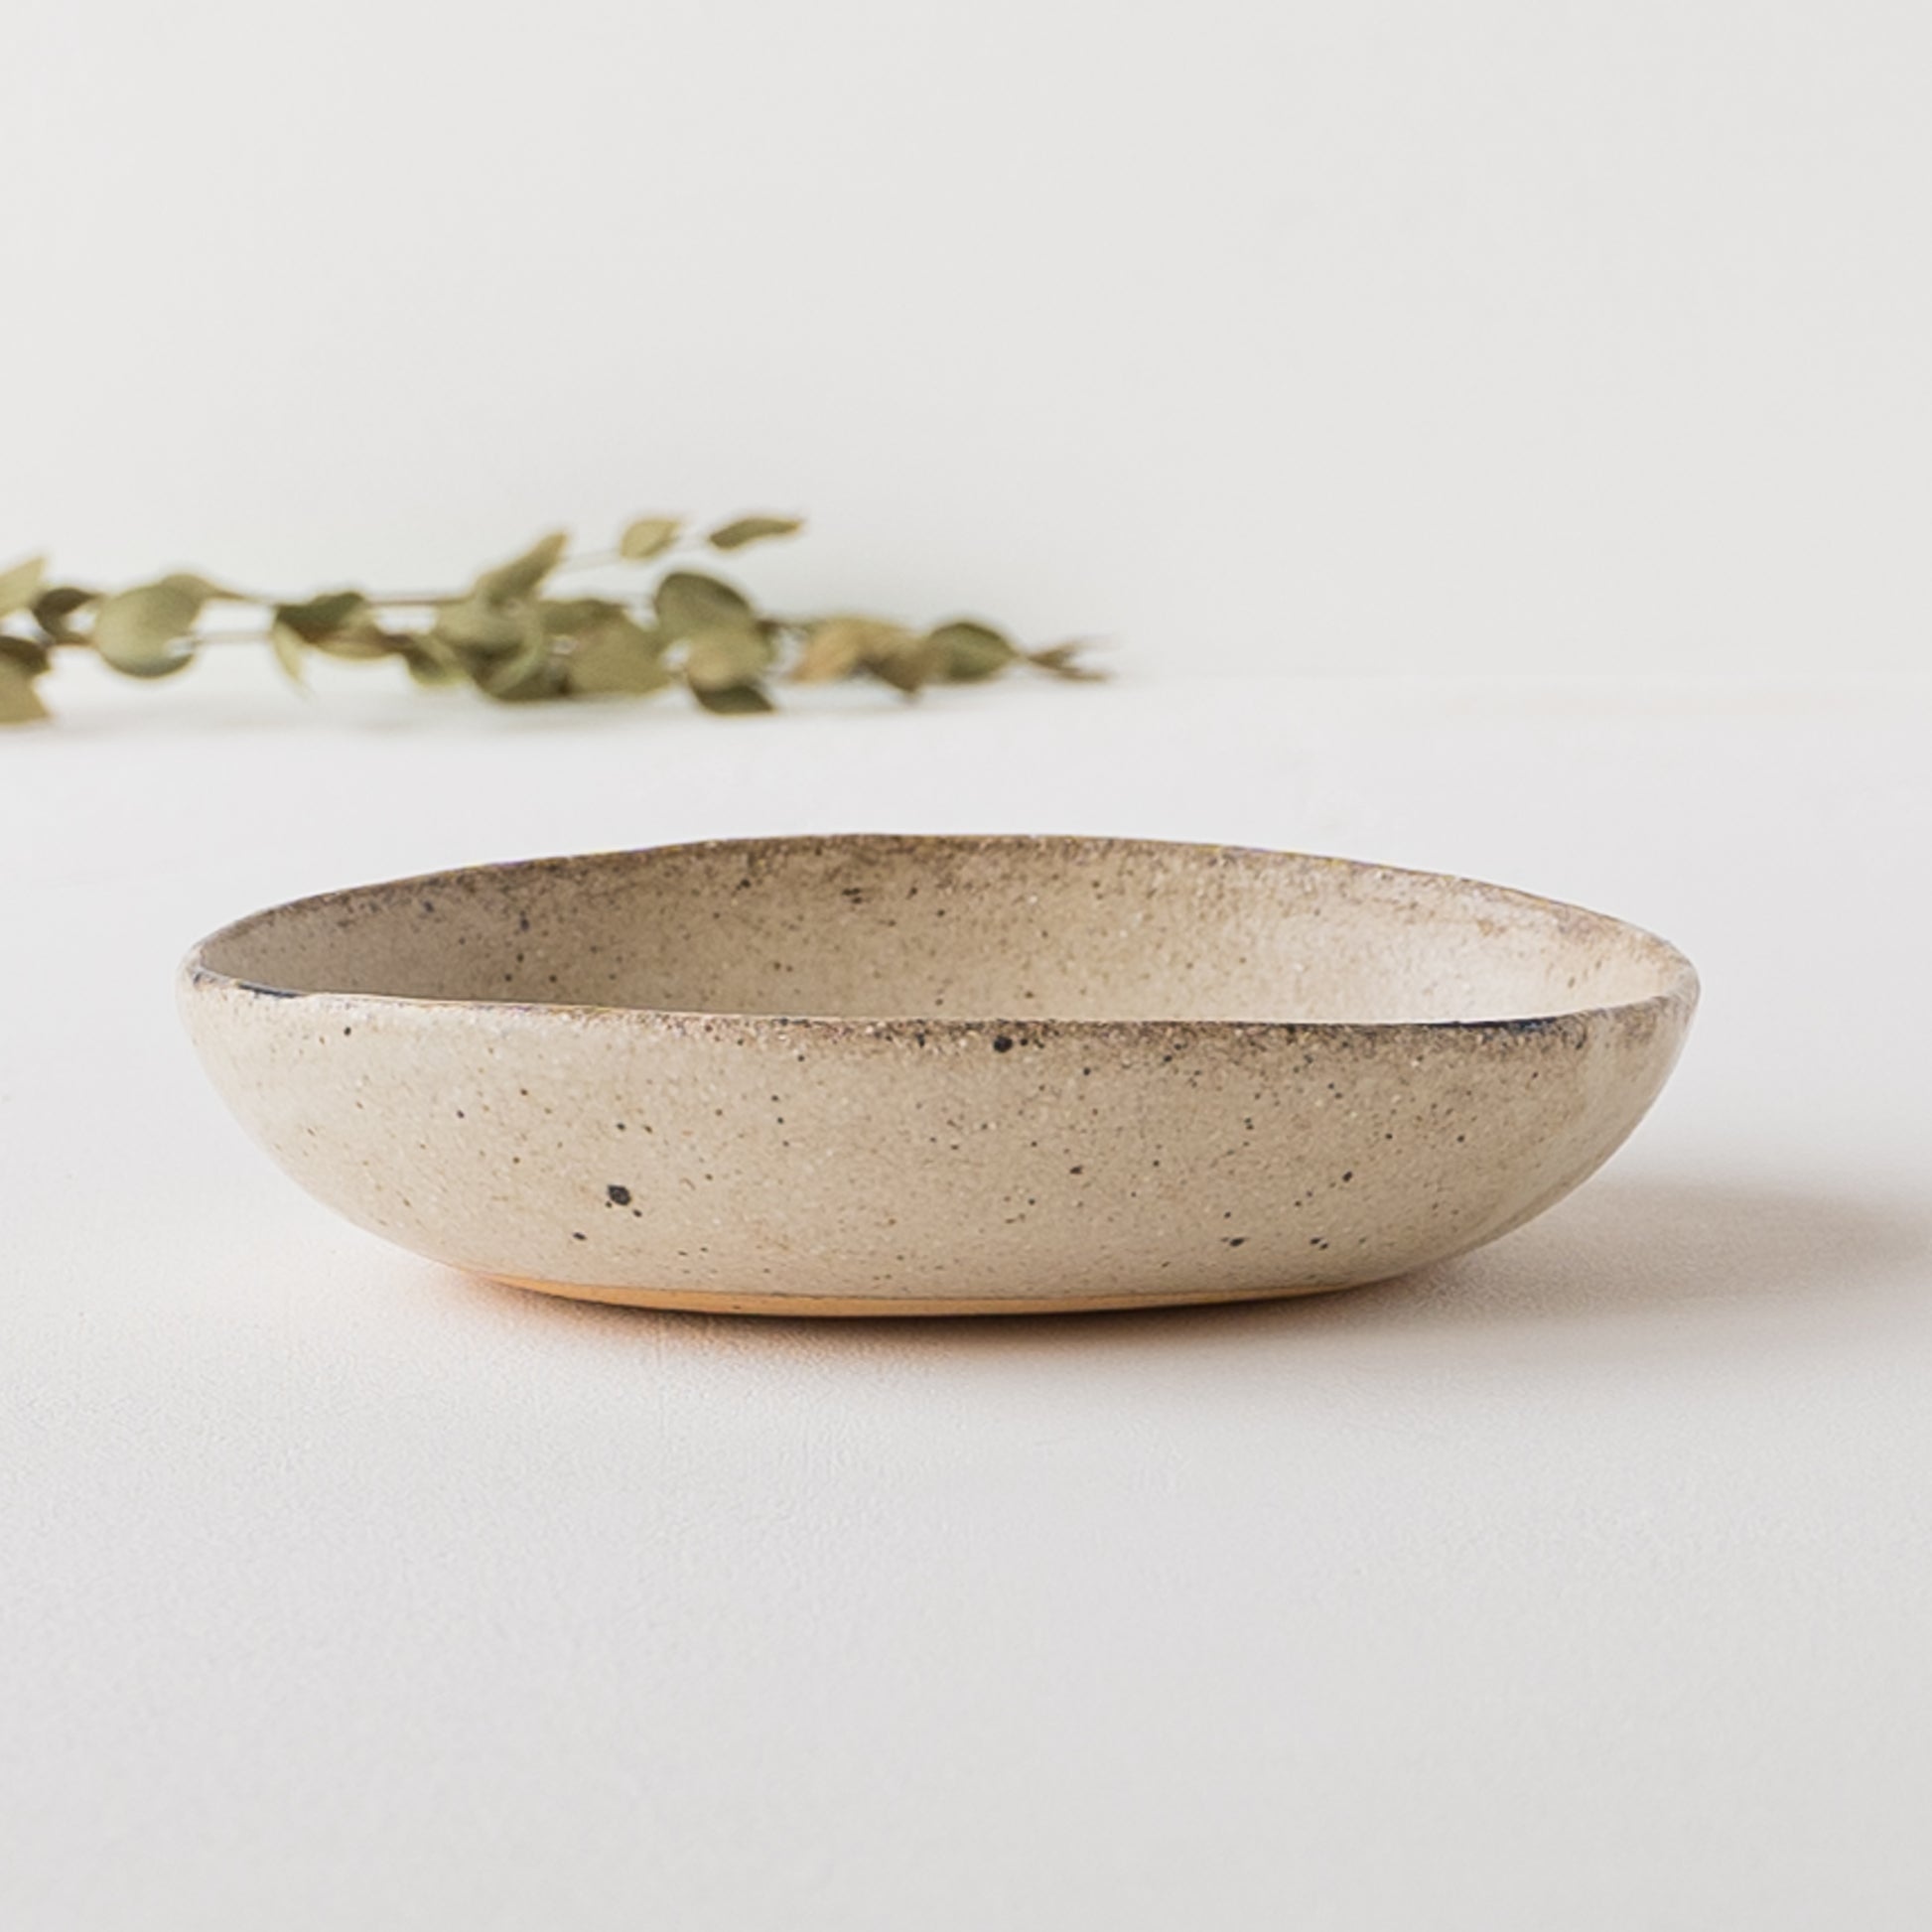 土ものの温もりが伝わってくる岡村朝子さんのお花模様の楕円皿